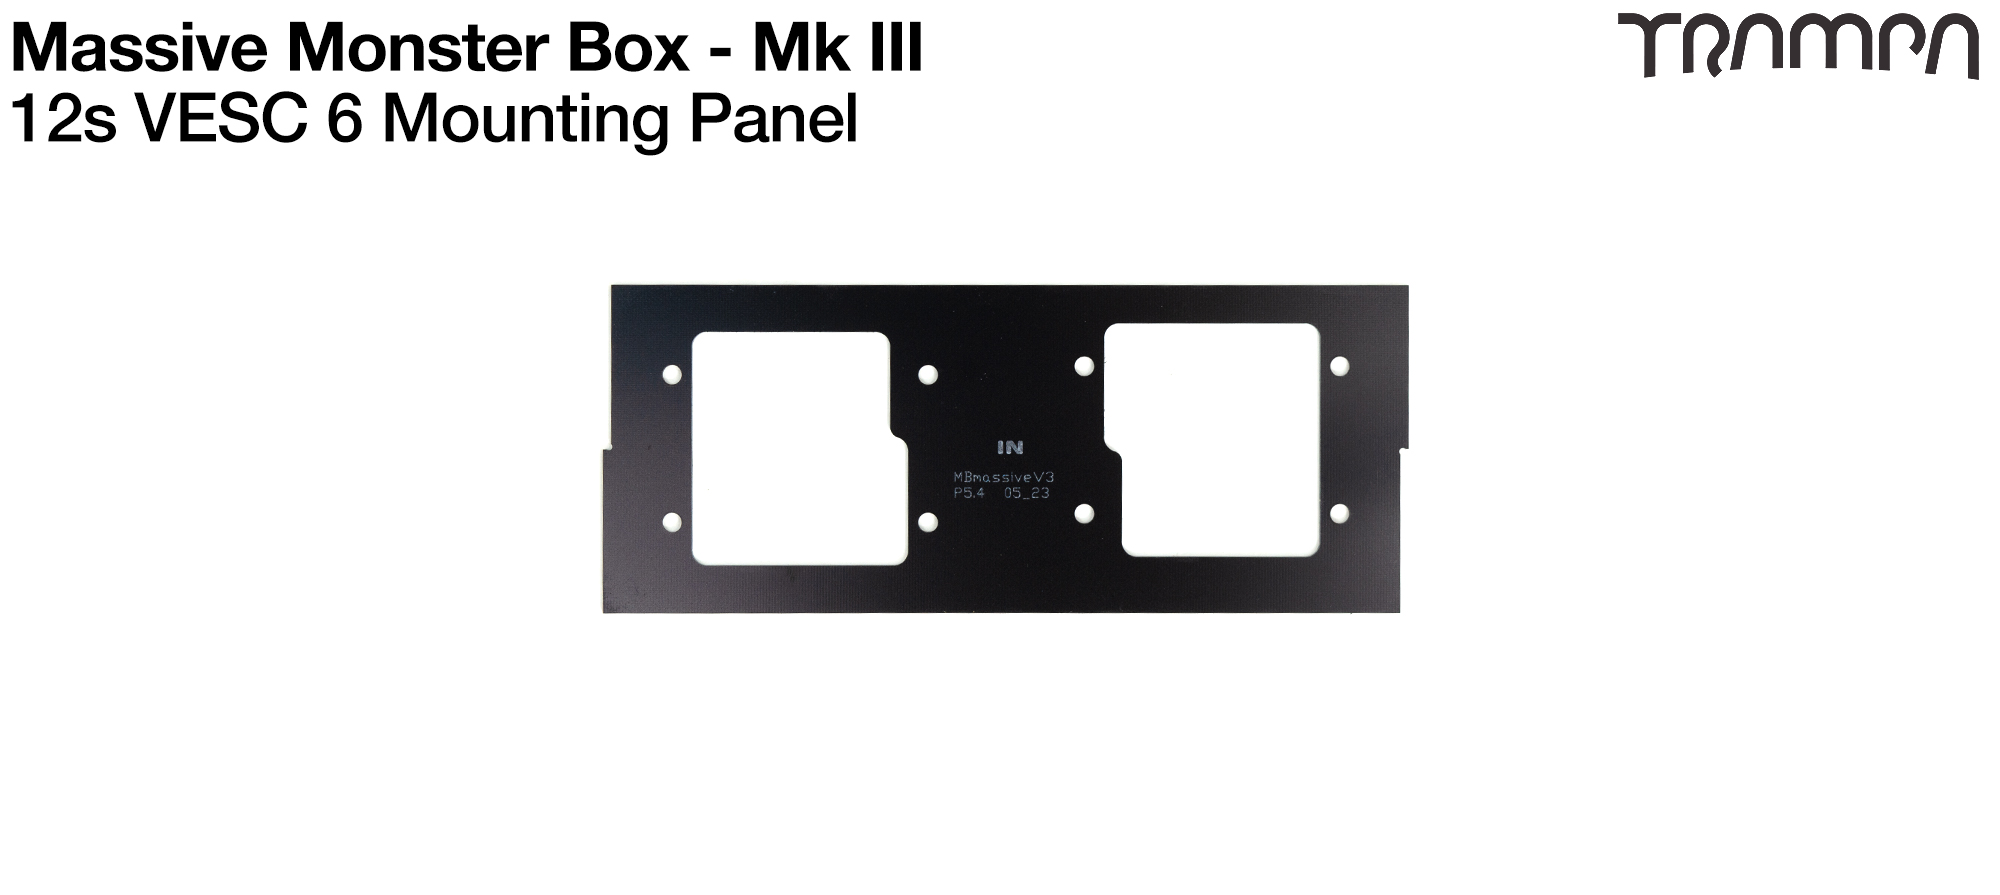 Mk III Massive Monster Box 12s - END panel 2x VESC 6